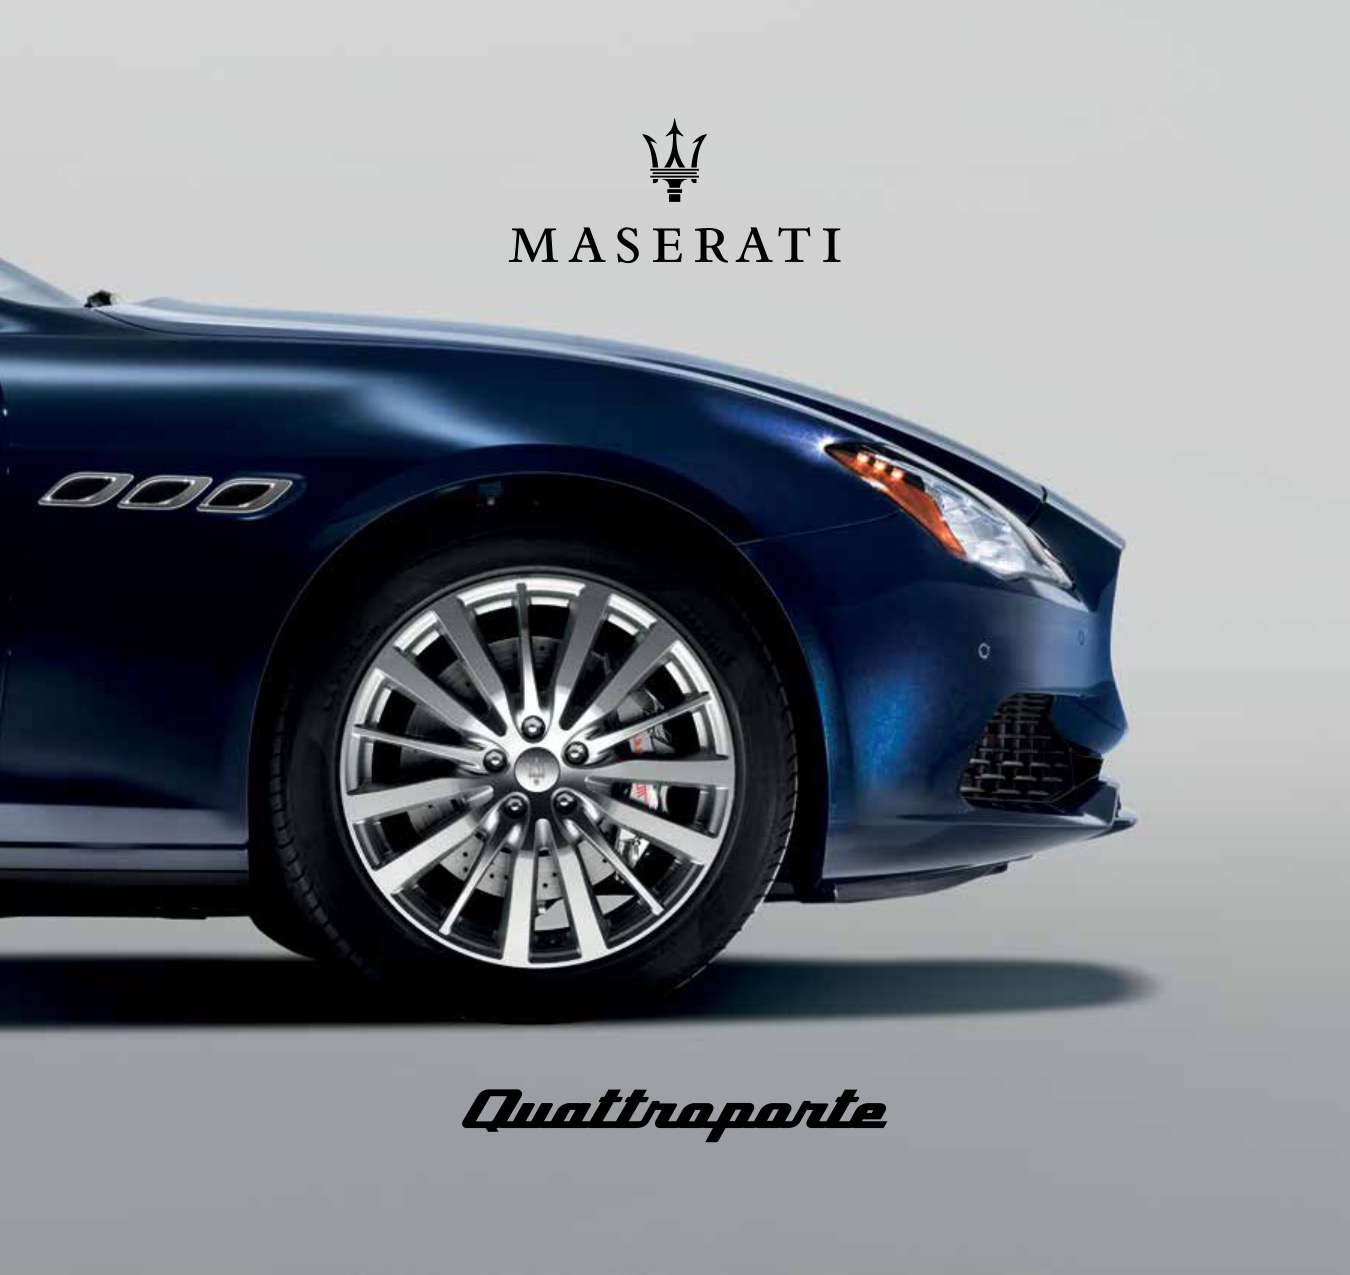 2017 Maserati Quattroporte Brochure